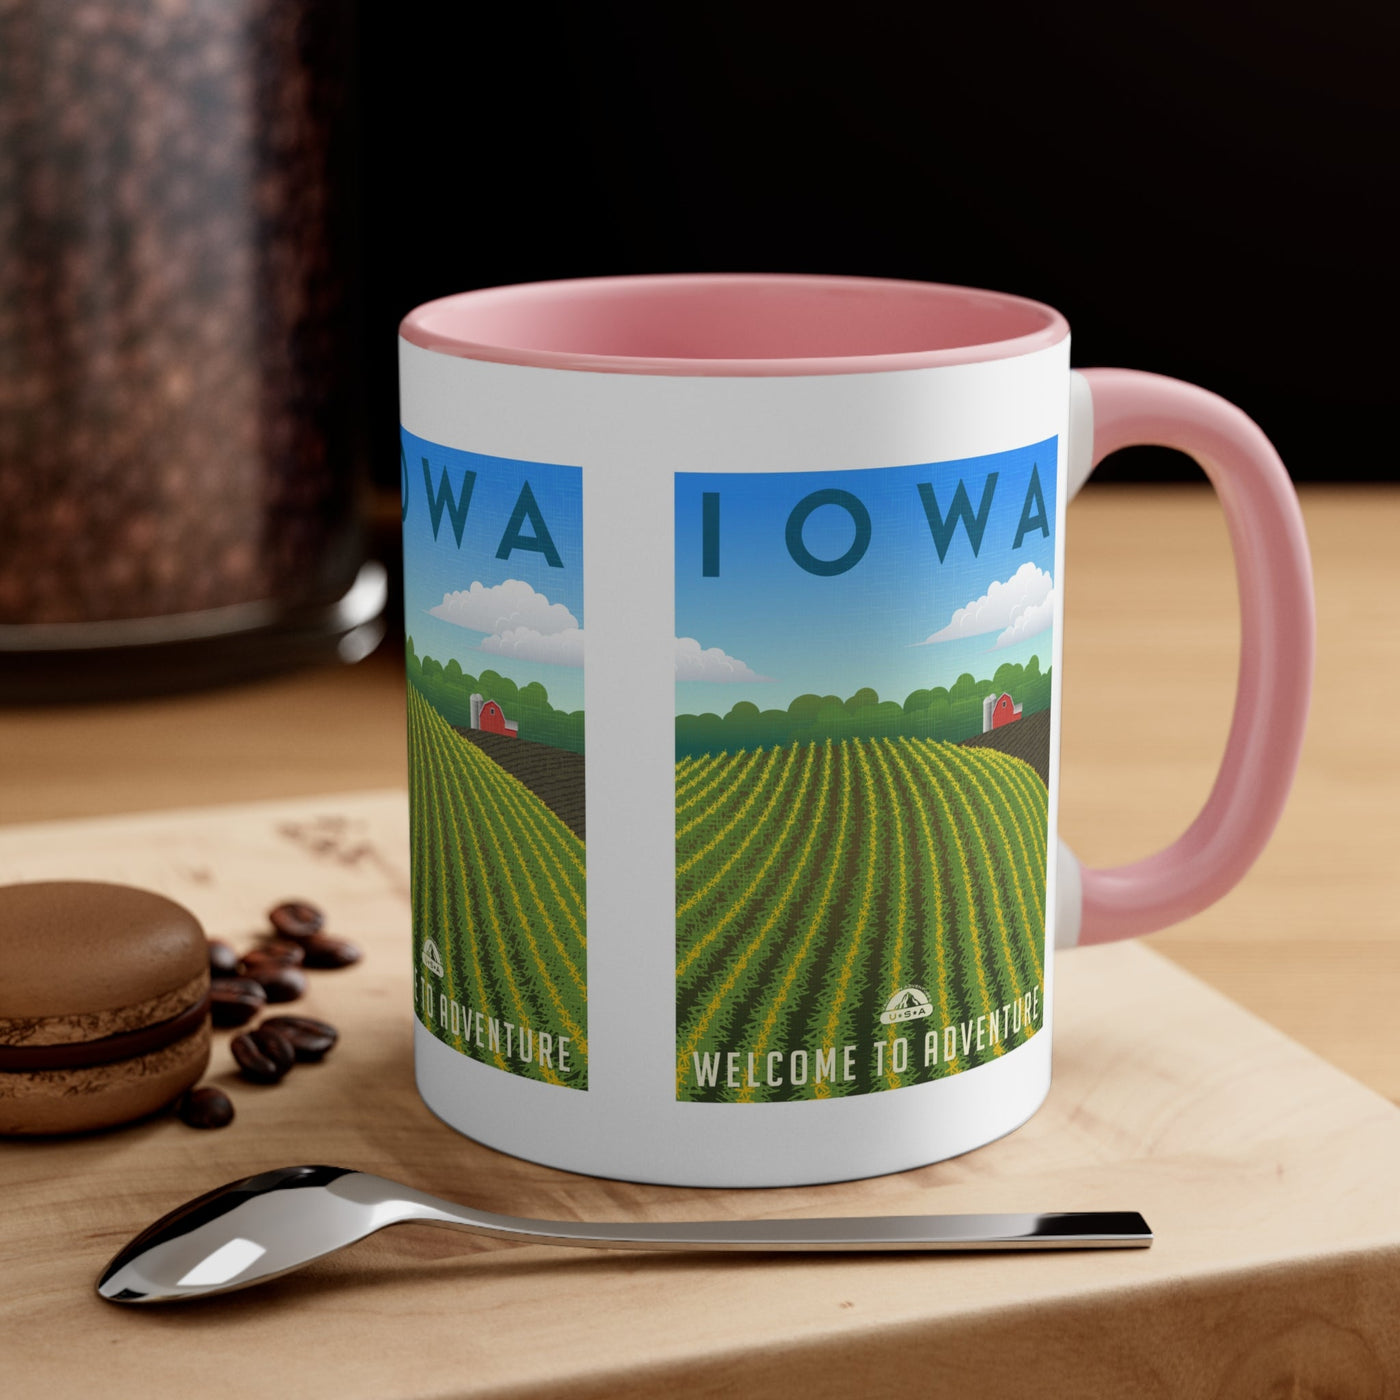 Iowa Coffee Mug - Ezra's Clothing